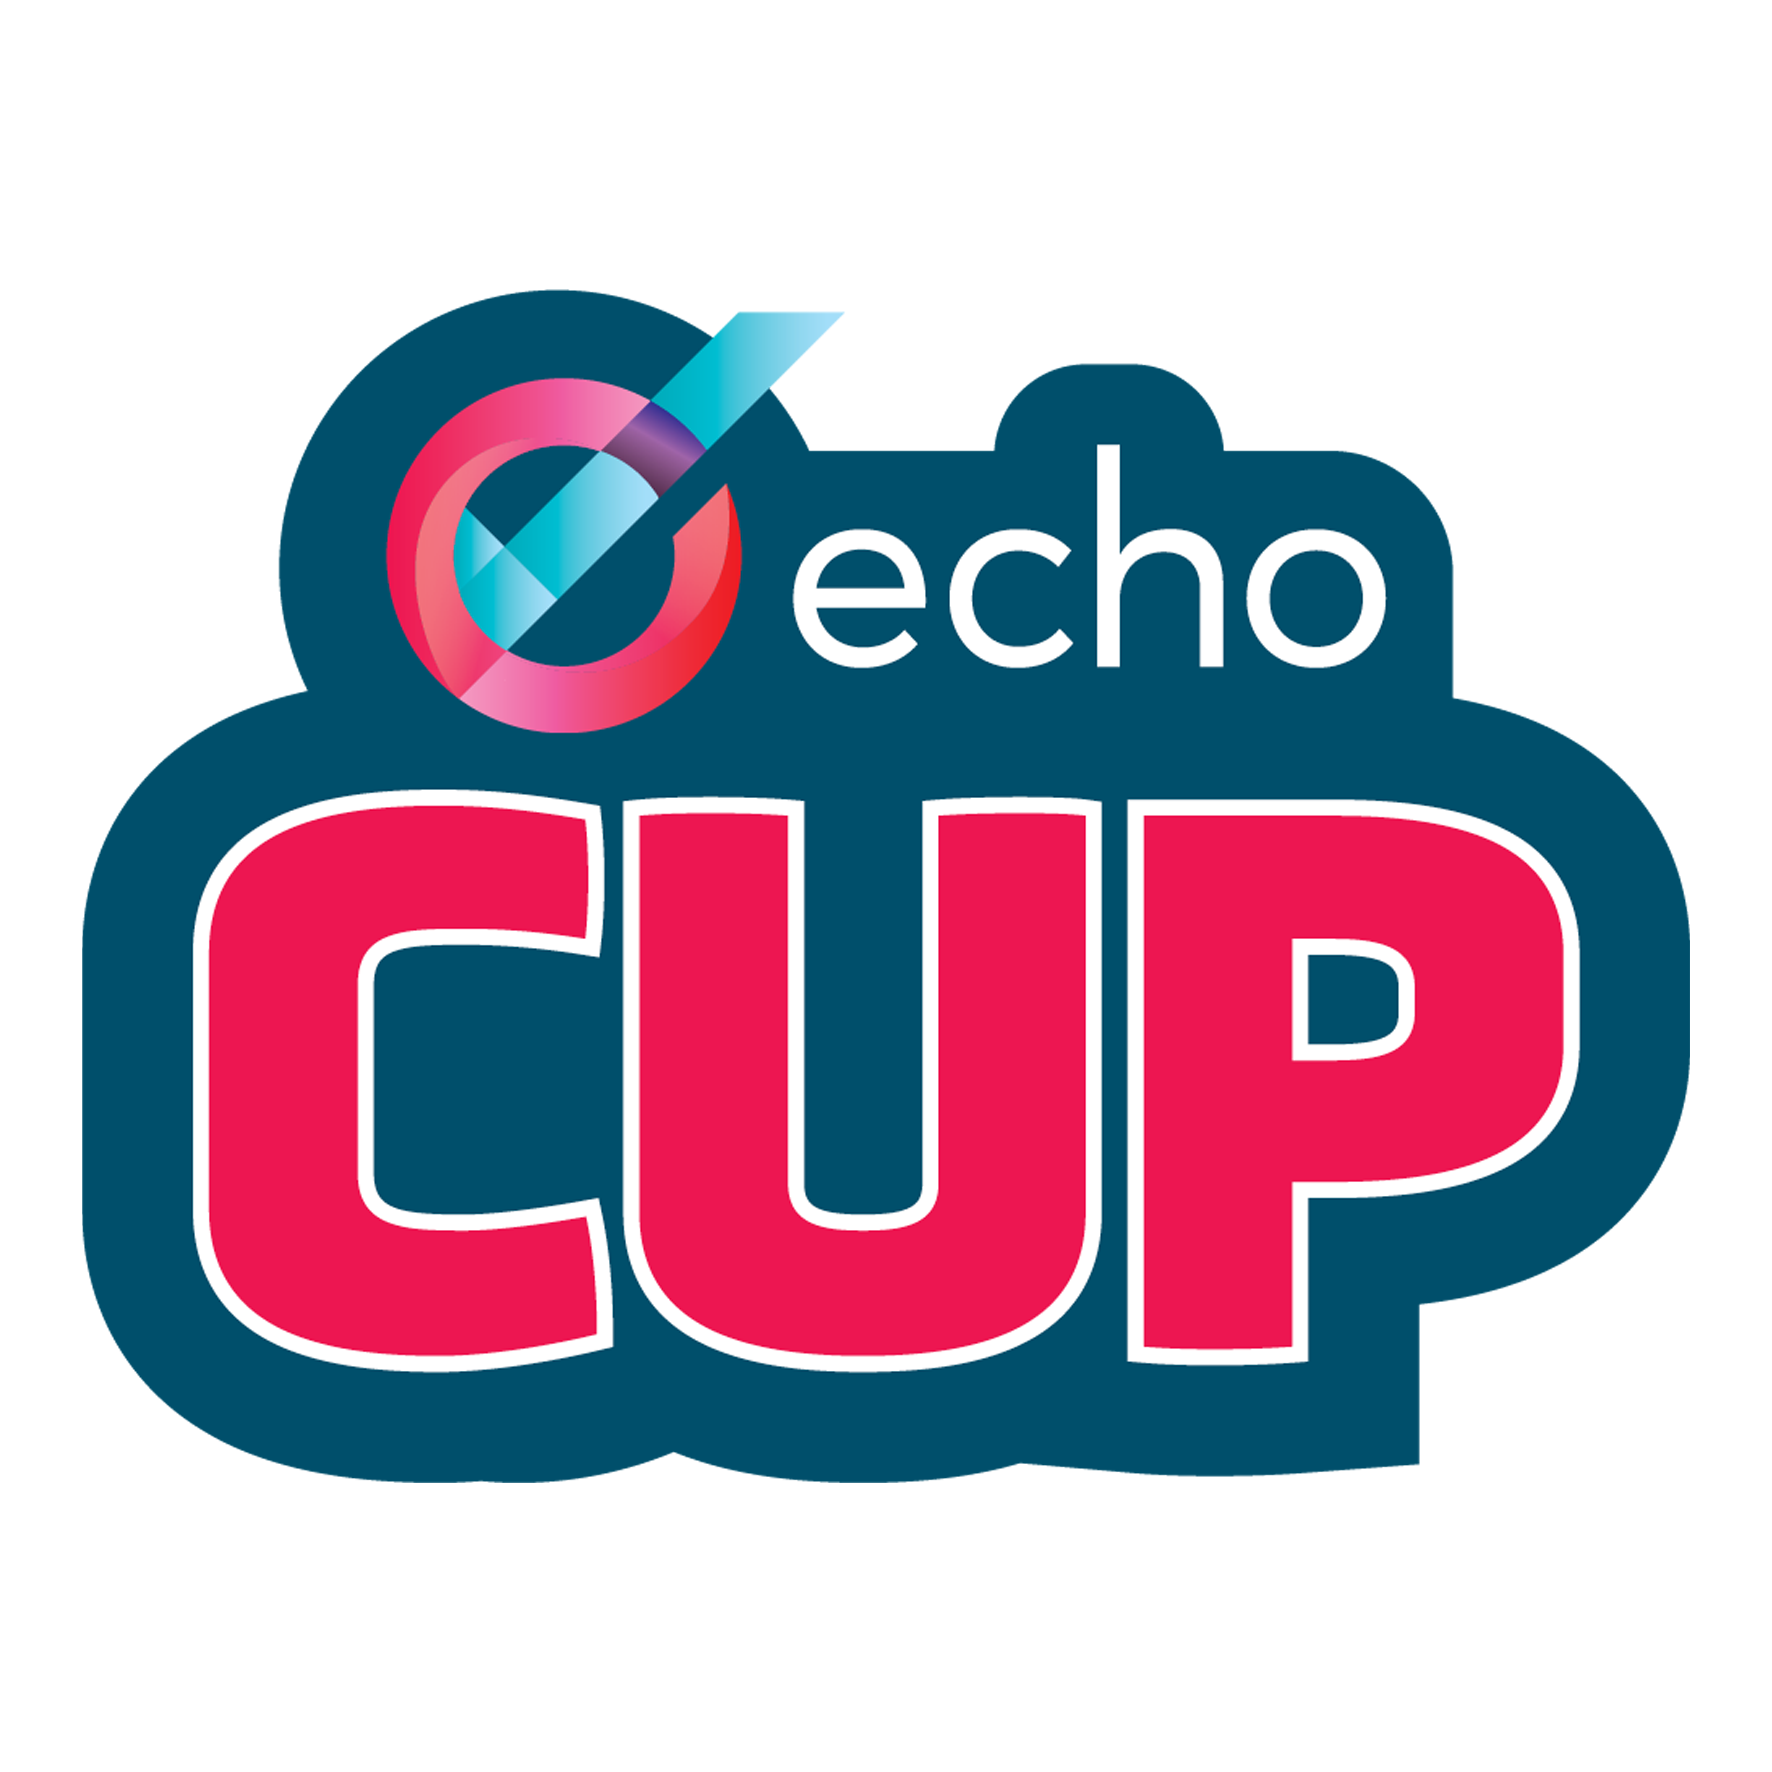 Echo Cup